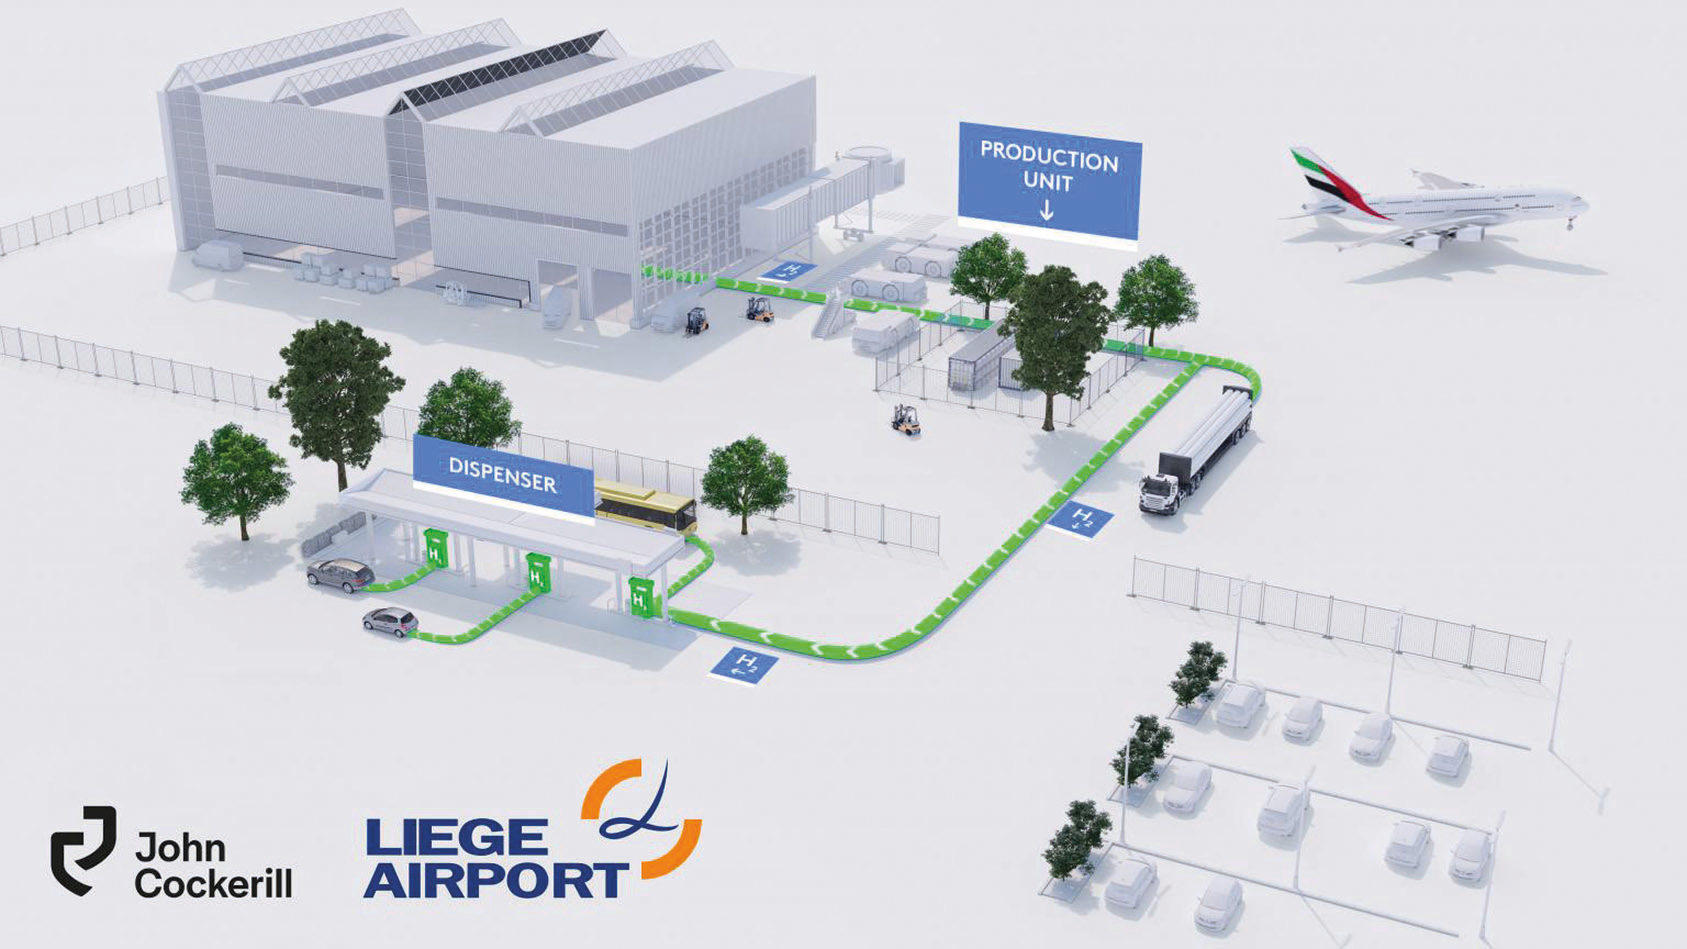 John Cockerill et Liege Airport ont obtenu en avril 2021 le feu vert du Gouvernement wallon pour déployer une infrastructure de production et de distribution d’hydrogène vert sur le site de l’aéroport de Liège.